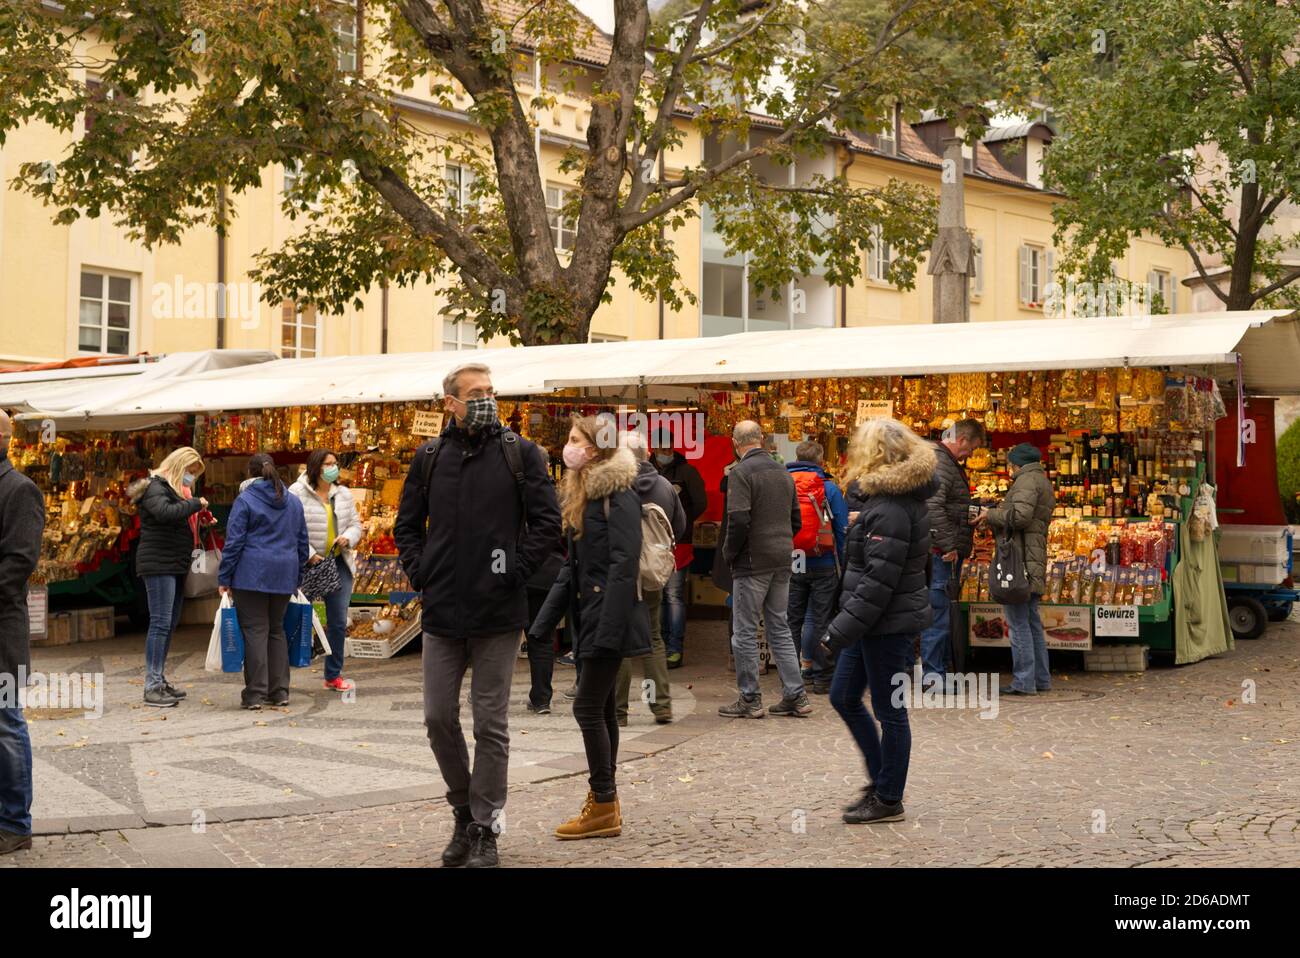 Street vendor se detiene en Merano, BZ, Italia en otoño 15 de octubre de 2020 imagen con los turistas usando una máscara de protección facial. Foto de stock